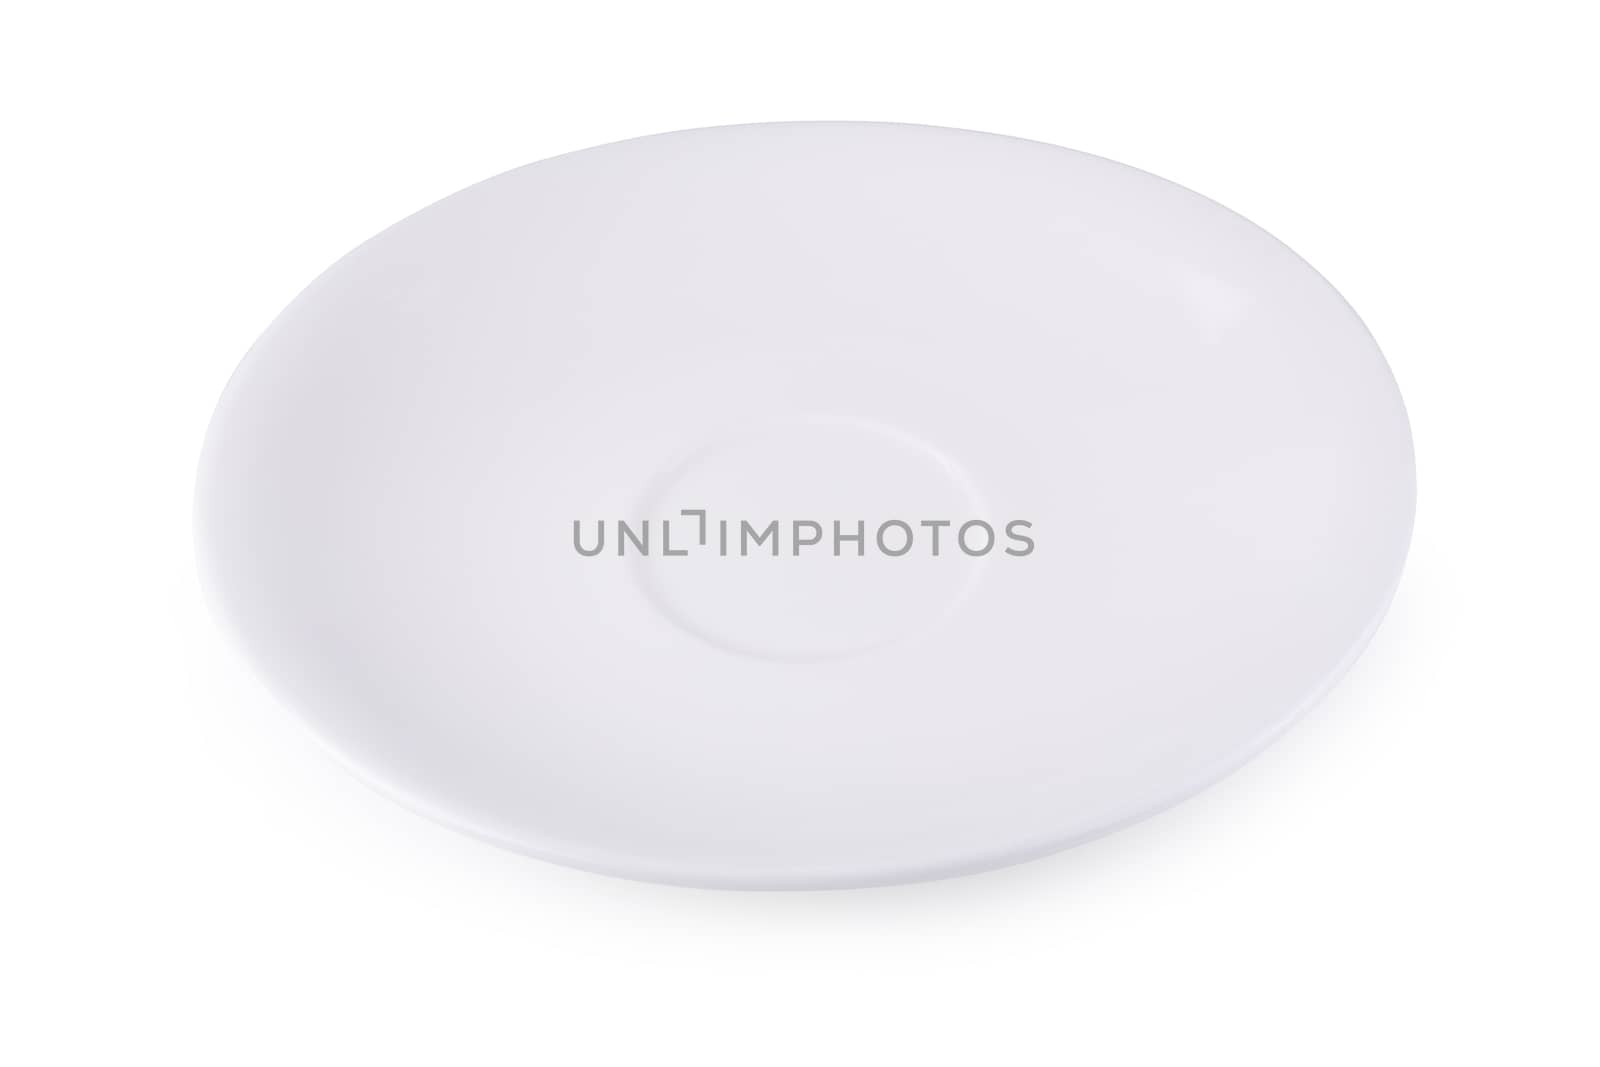 Empty blank white ceramic dish isolated on white background.